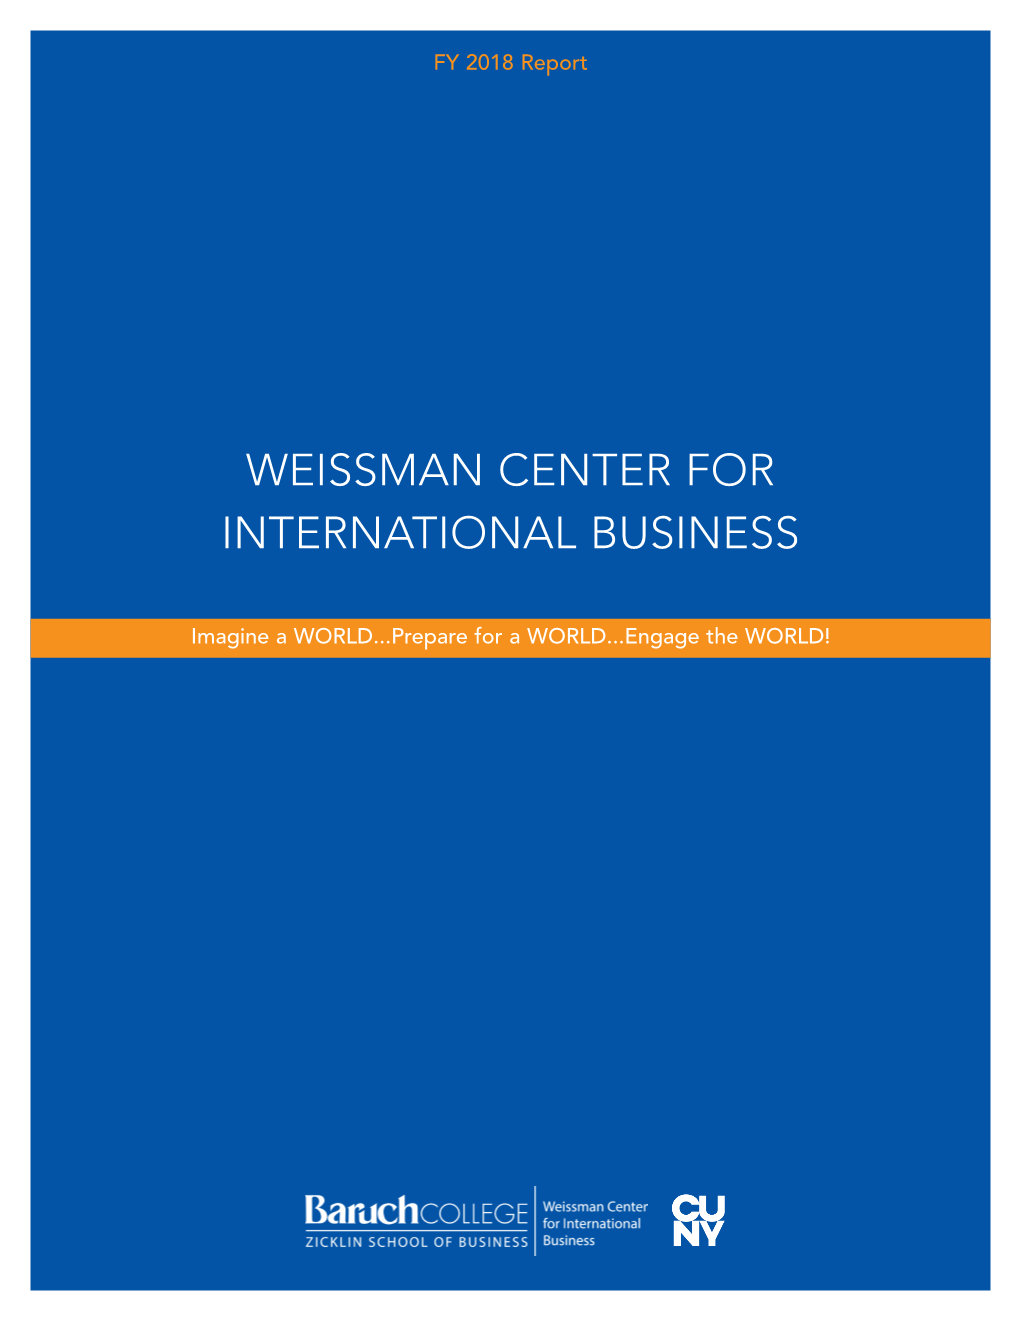 Weissman Center for International Business